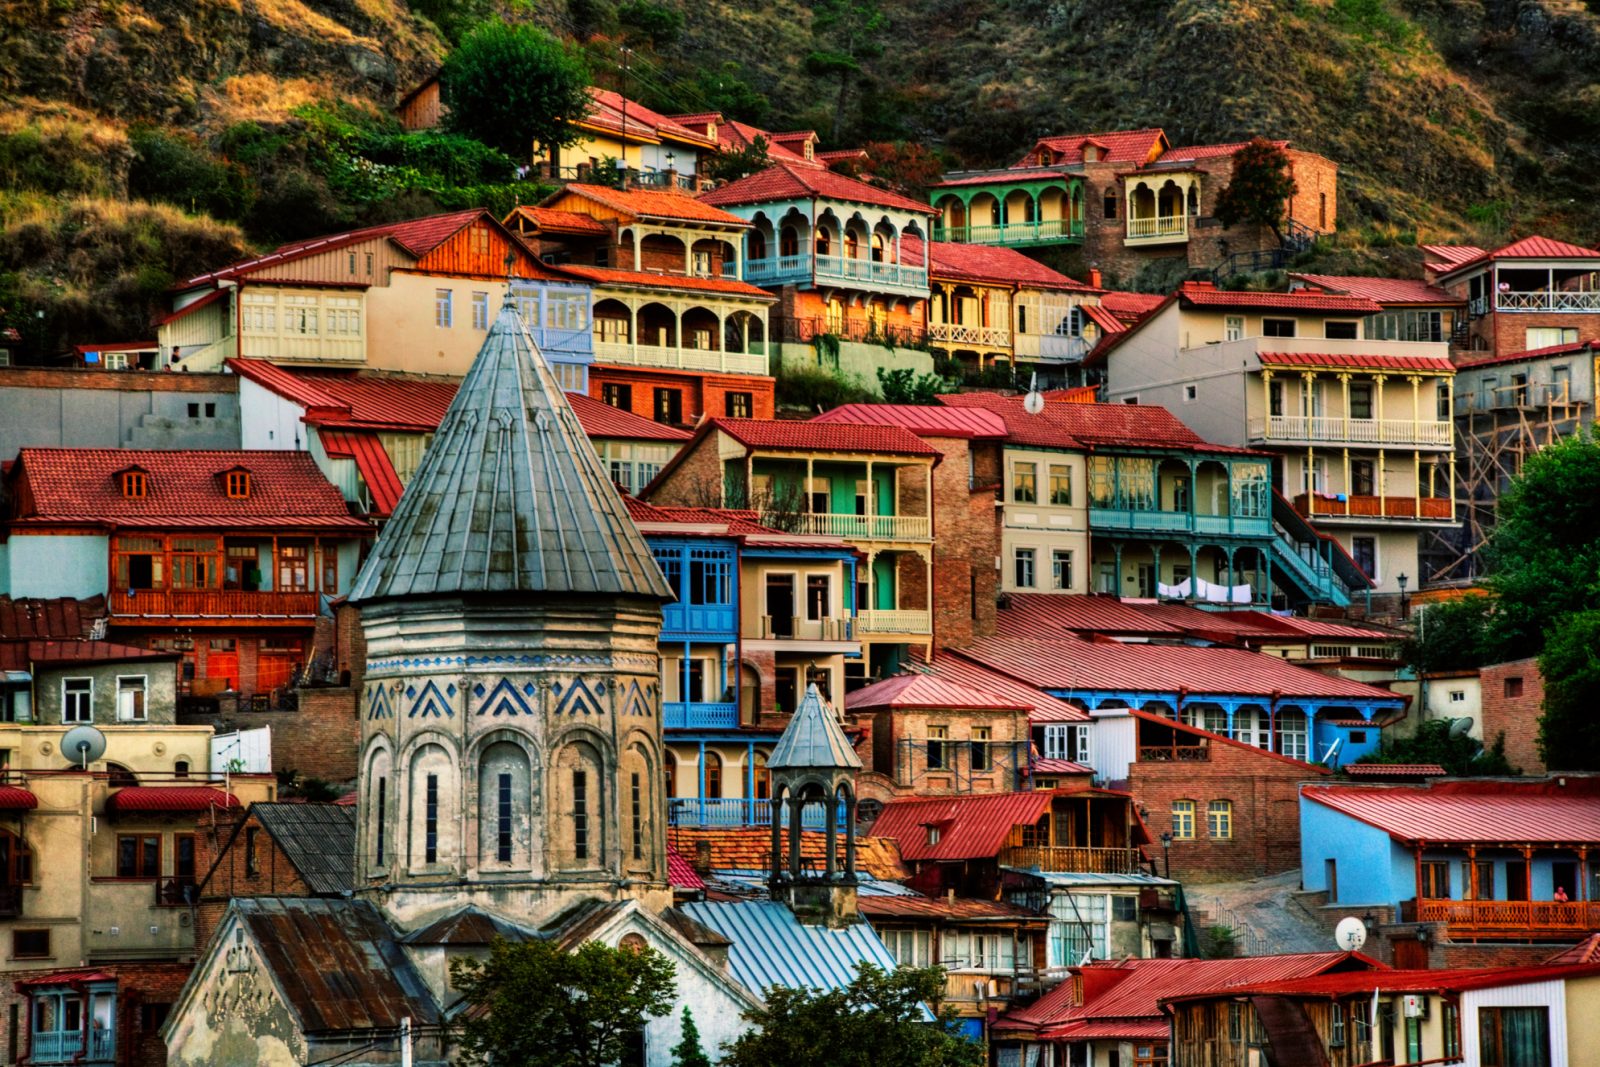 Day 2: Tbilisi city tour 